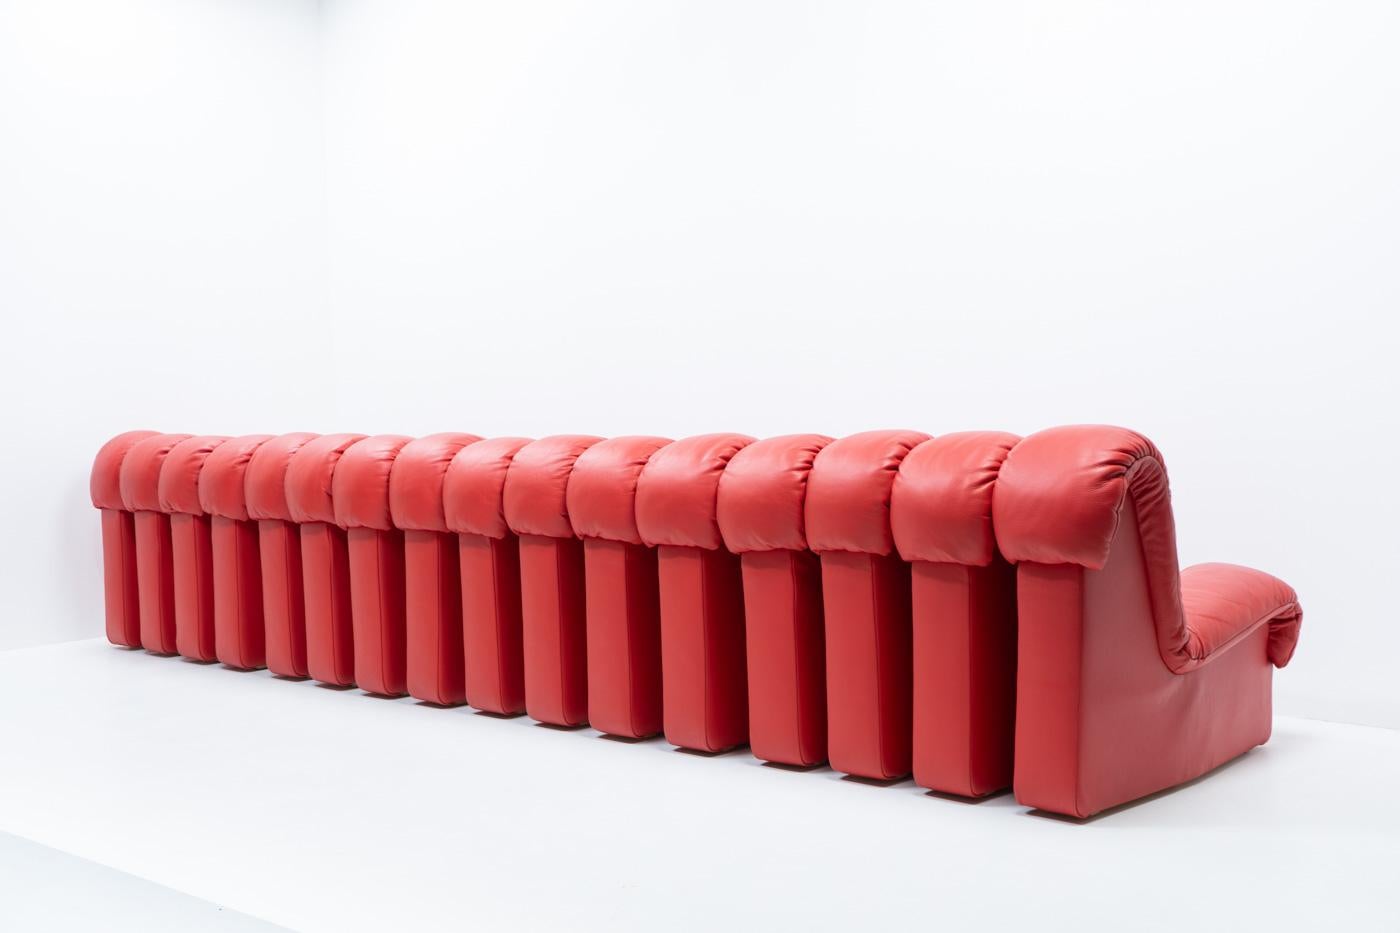 De Sede DS-600 “Non- Stop” Sofa (16 segments) In Good Condition For Sale In Renens, CH